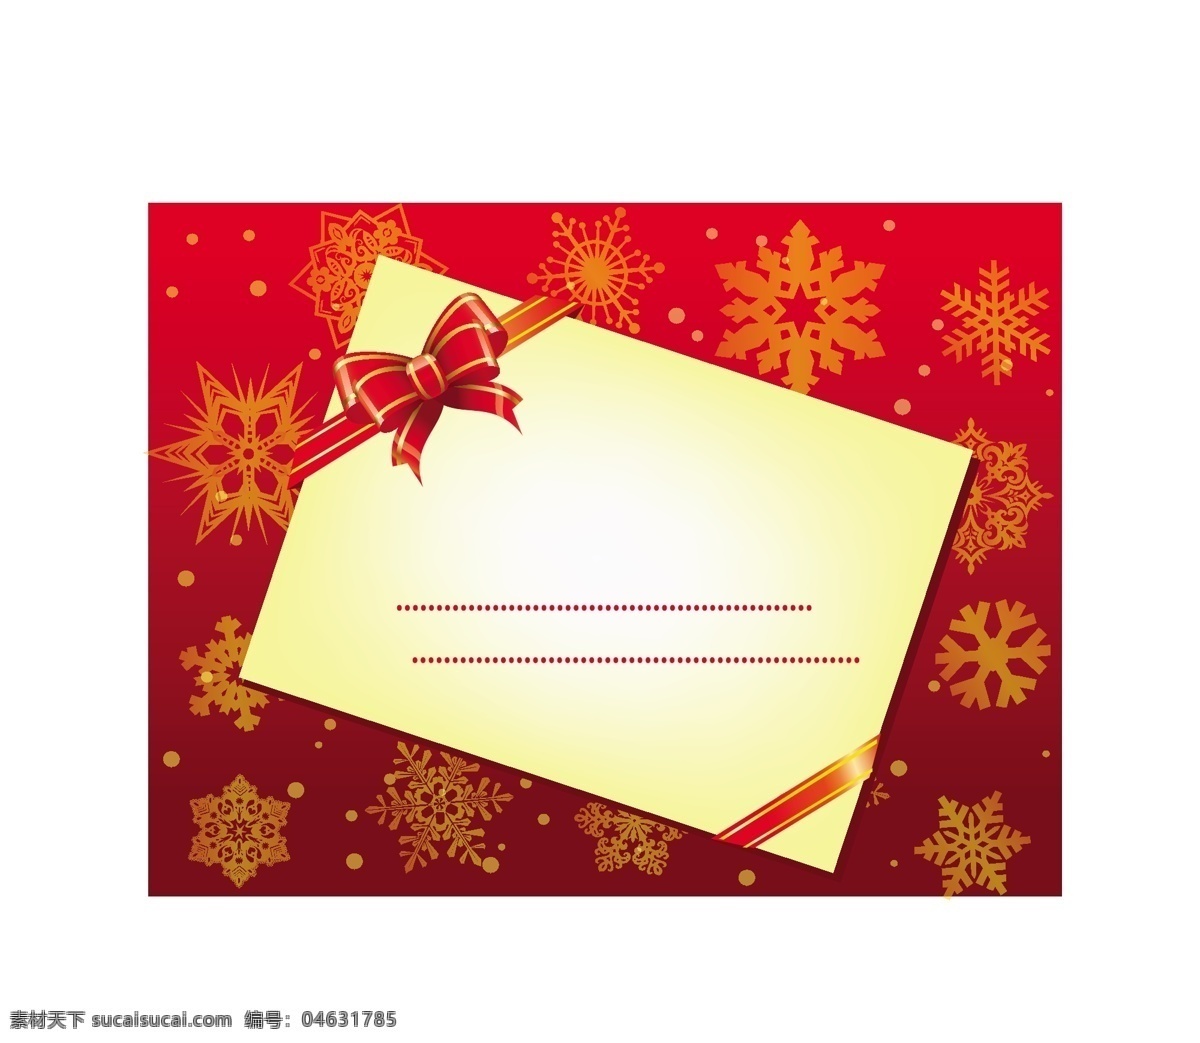 圣诞节 信封 圣诞节的信封 矢量 圣诞卡 圣诞的信封 礼物 圣诞信封设计 信 免费 矢量图 其他矢量图